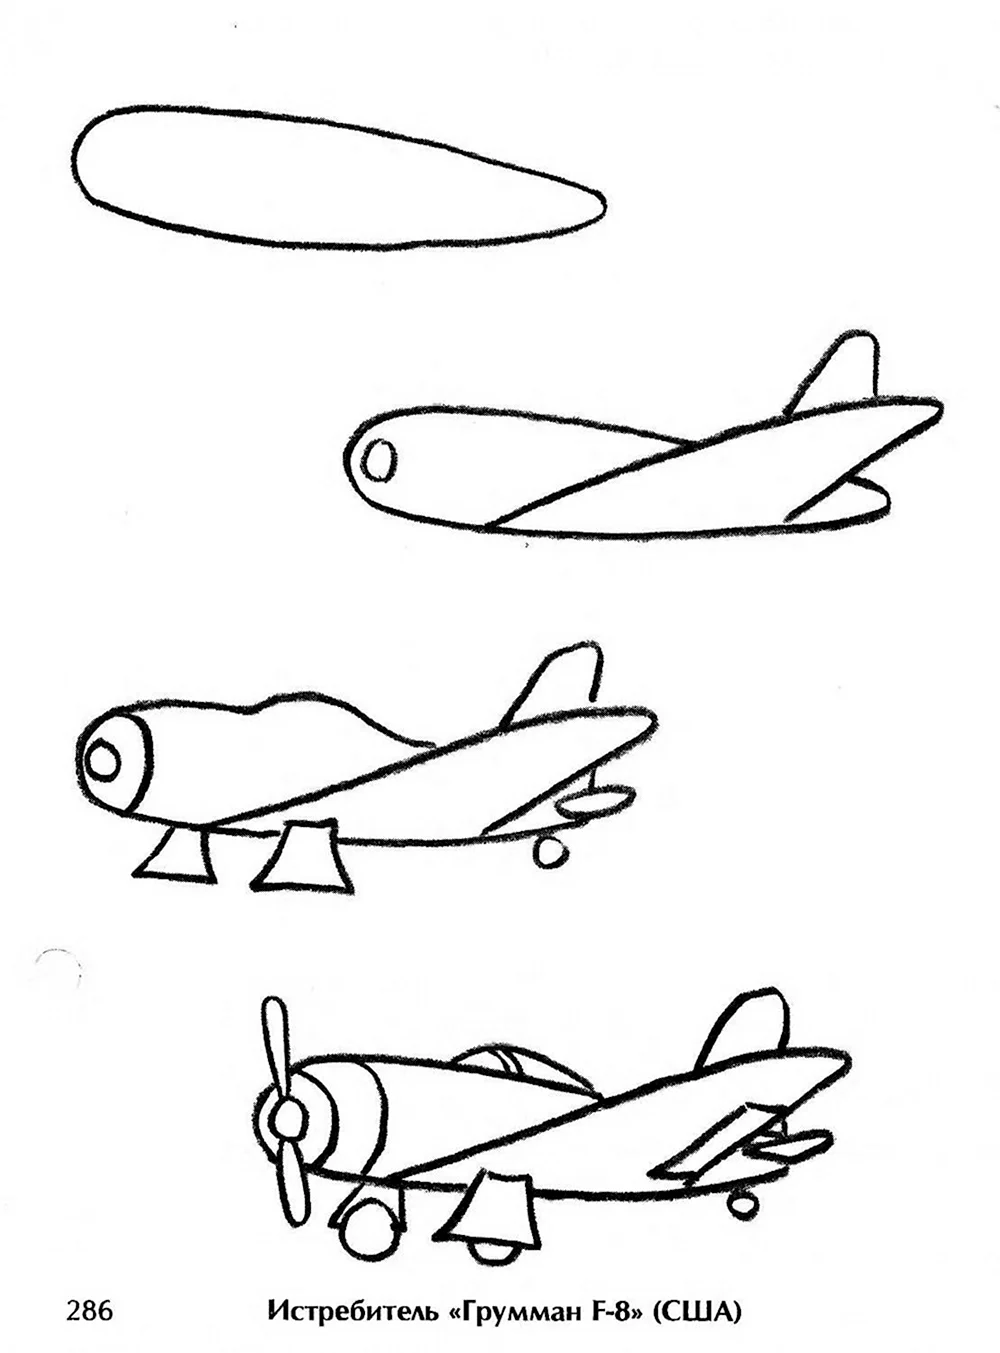 Поэтапное рисование самолета